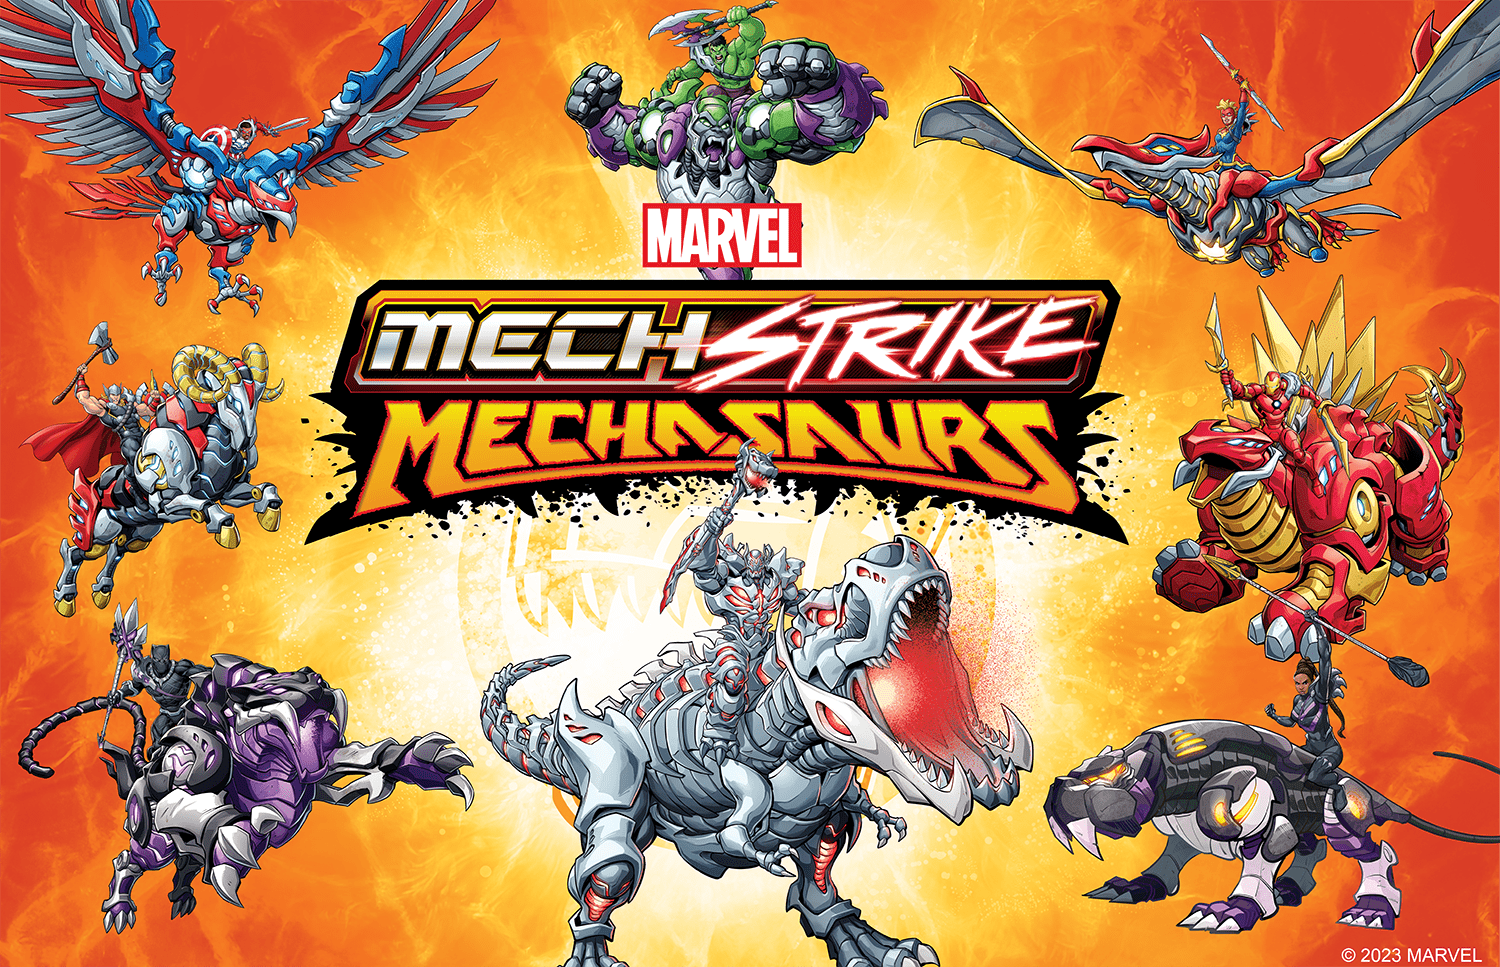 'Marvel’s Avengers Mech Strike: Mechasaurs' roars onto Marvel HQ's YouTube March 8